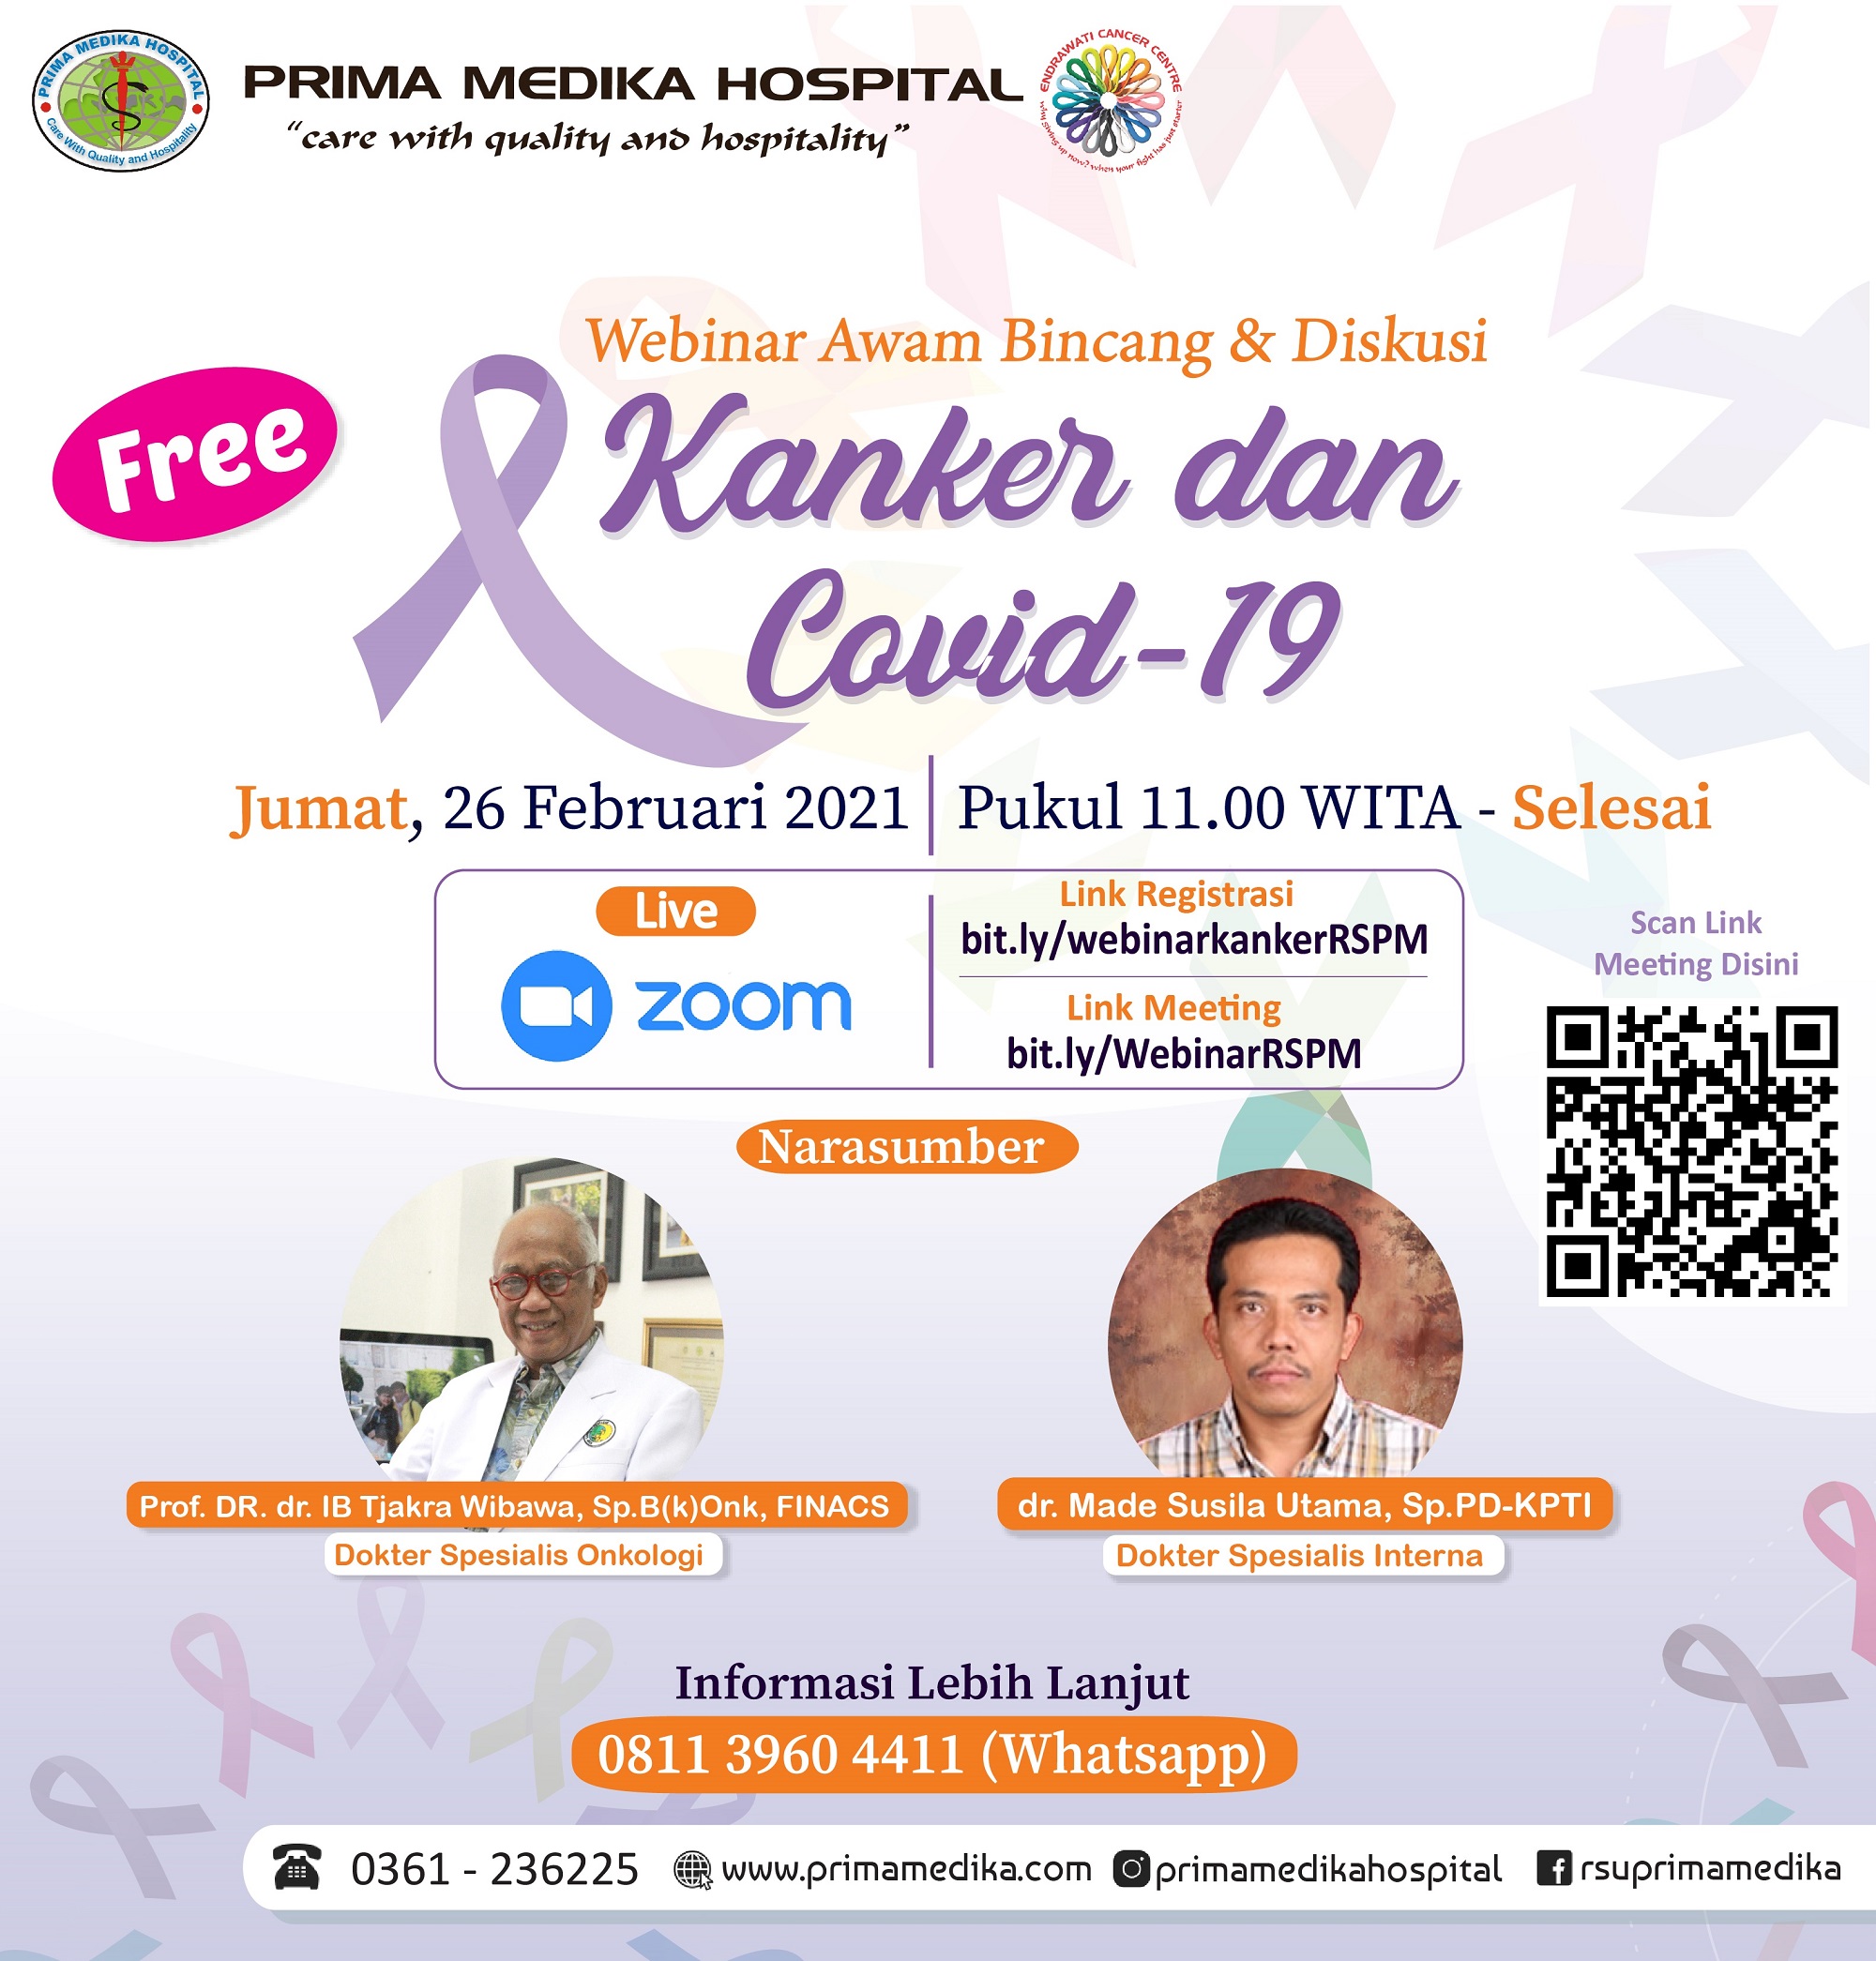 Hii Sahabat Prima, Yuk ketahui lebih banyak tentang Kanker dan Covid-19 !